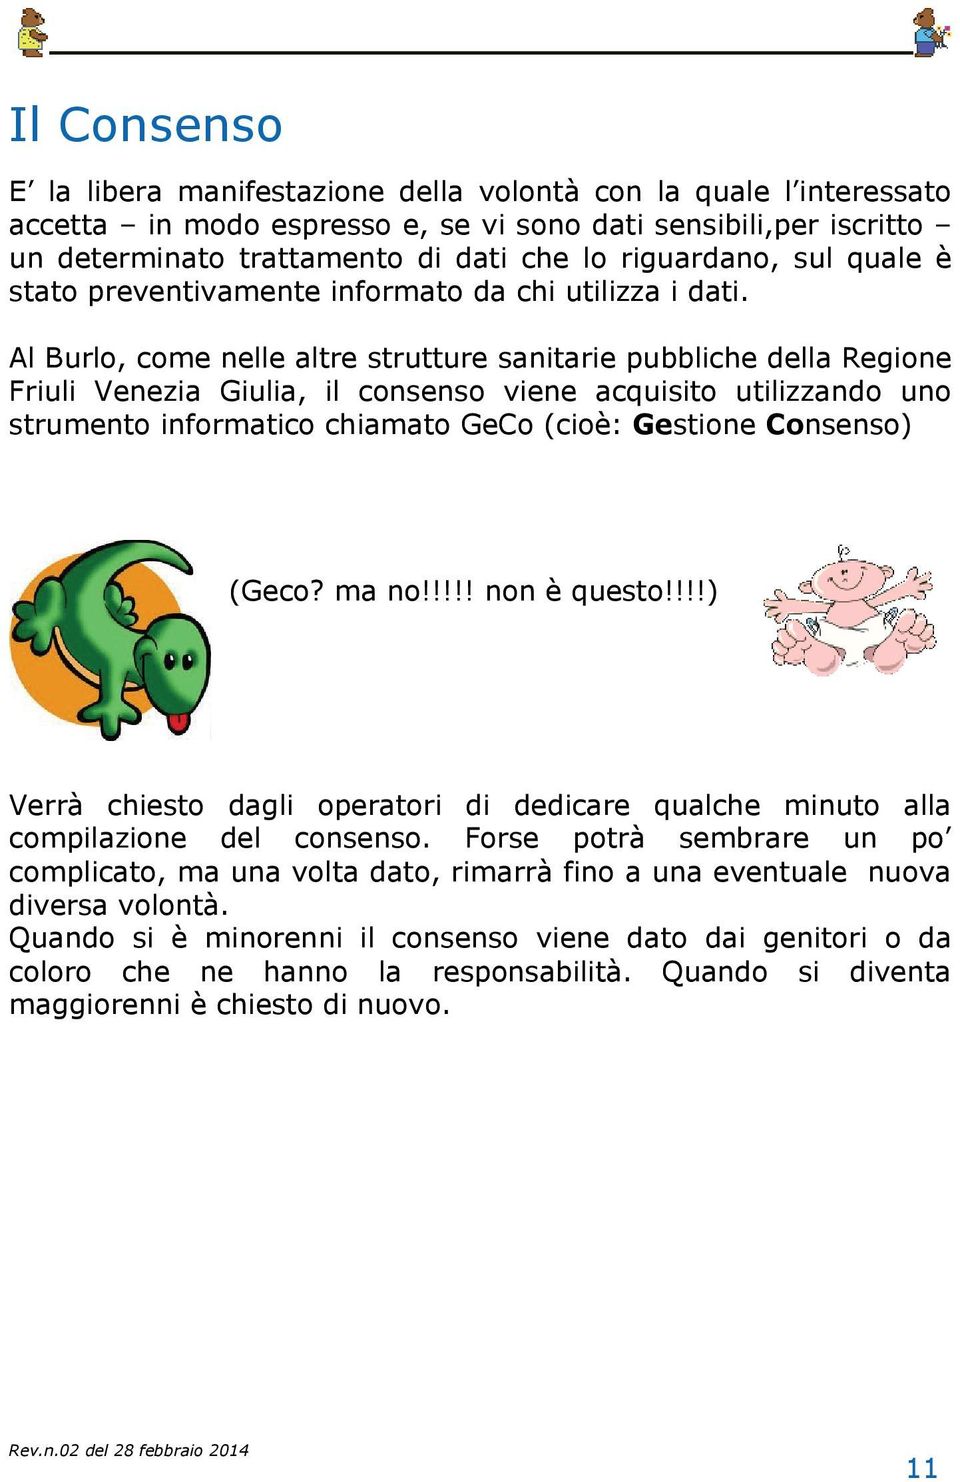 Al Burlo, come nelle altre strutture sanitarie pubbliche della Regione Friuli Venezia Giulia, il consenso viene acquisito utilizzando uno strumento informatico chiamato GeCo (cioè: Gestione Consenso)